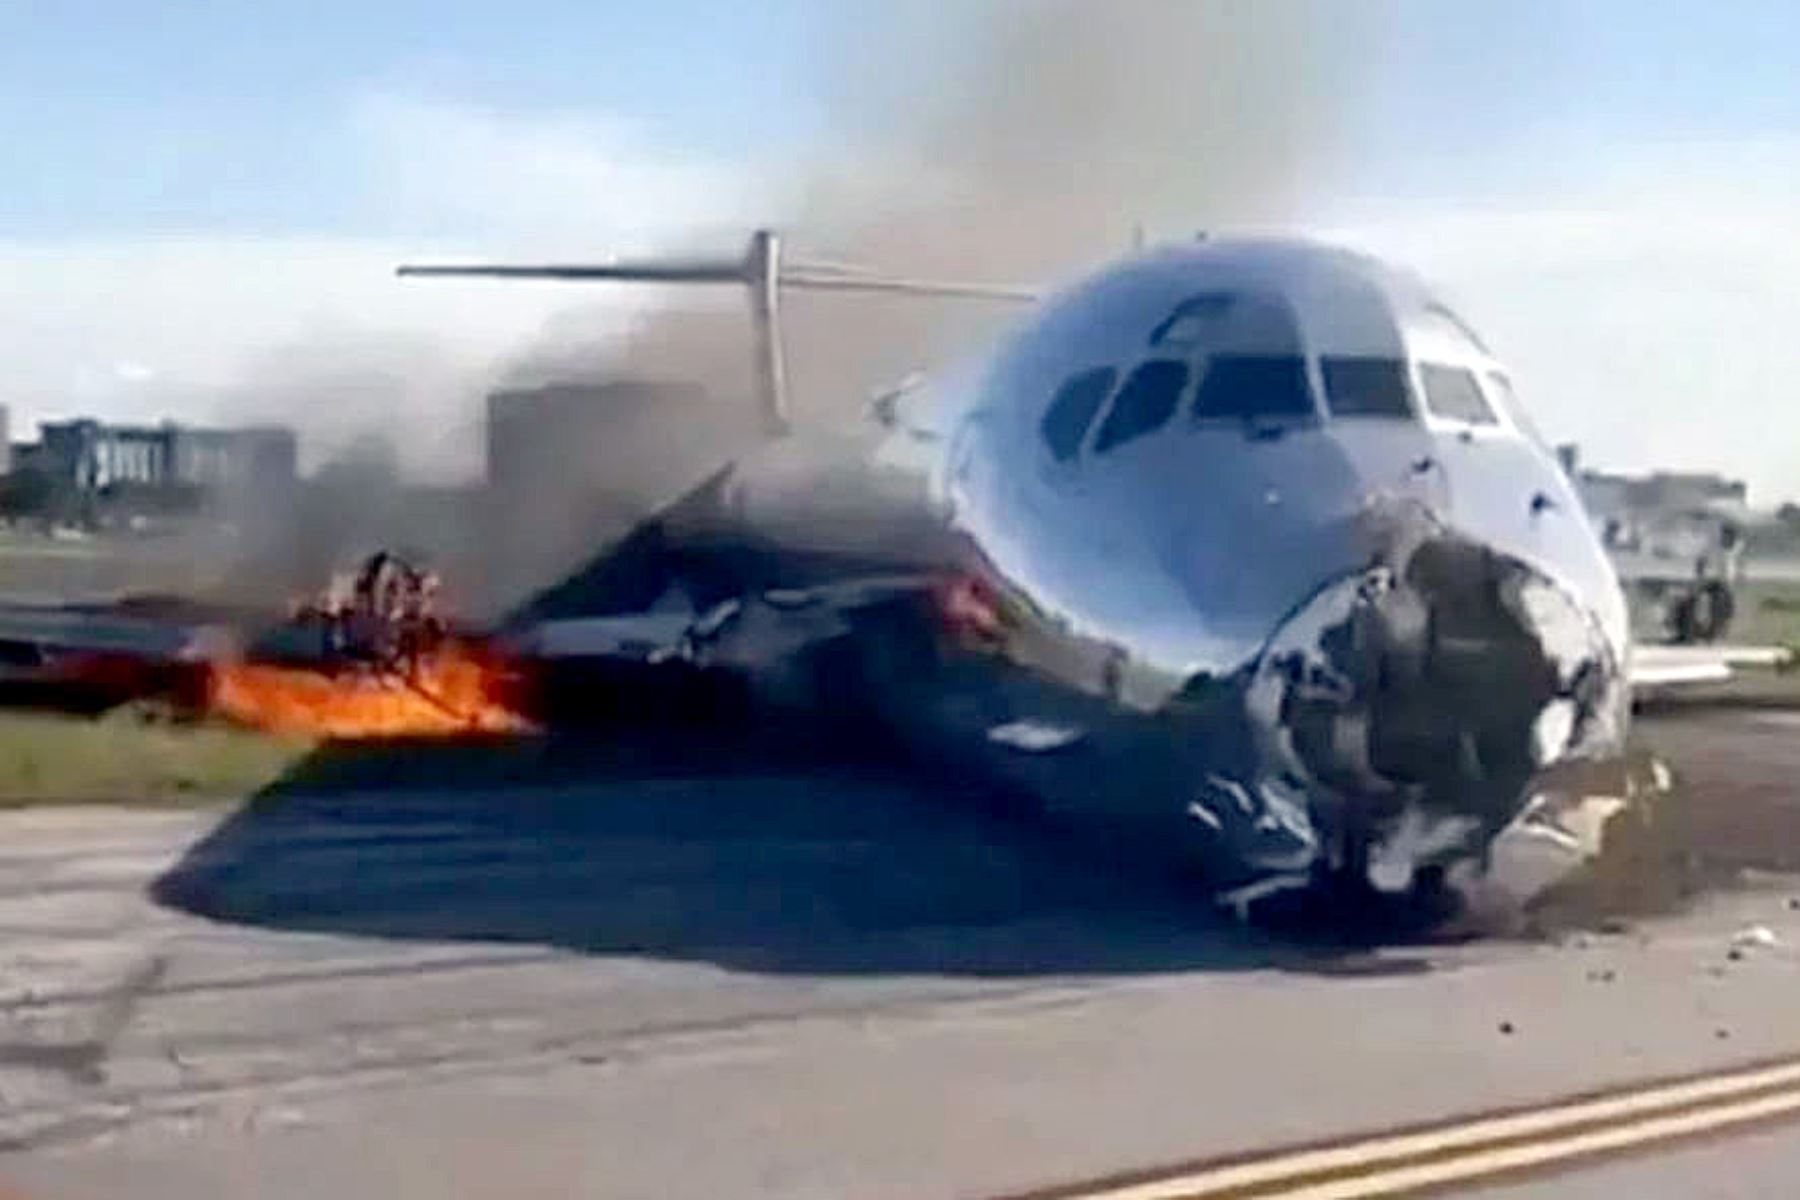 Un video publicado por varios medios de comunicación muestra la evacuación del avión, un McDonnell Douglas MD-82, torcido en la pista con el morro doblado mientras sale un espeso humo negro del fuselaje. Foto: Captura de pantalla.